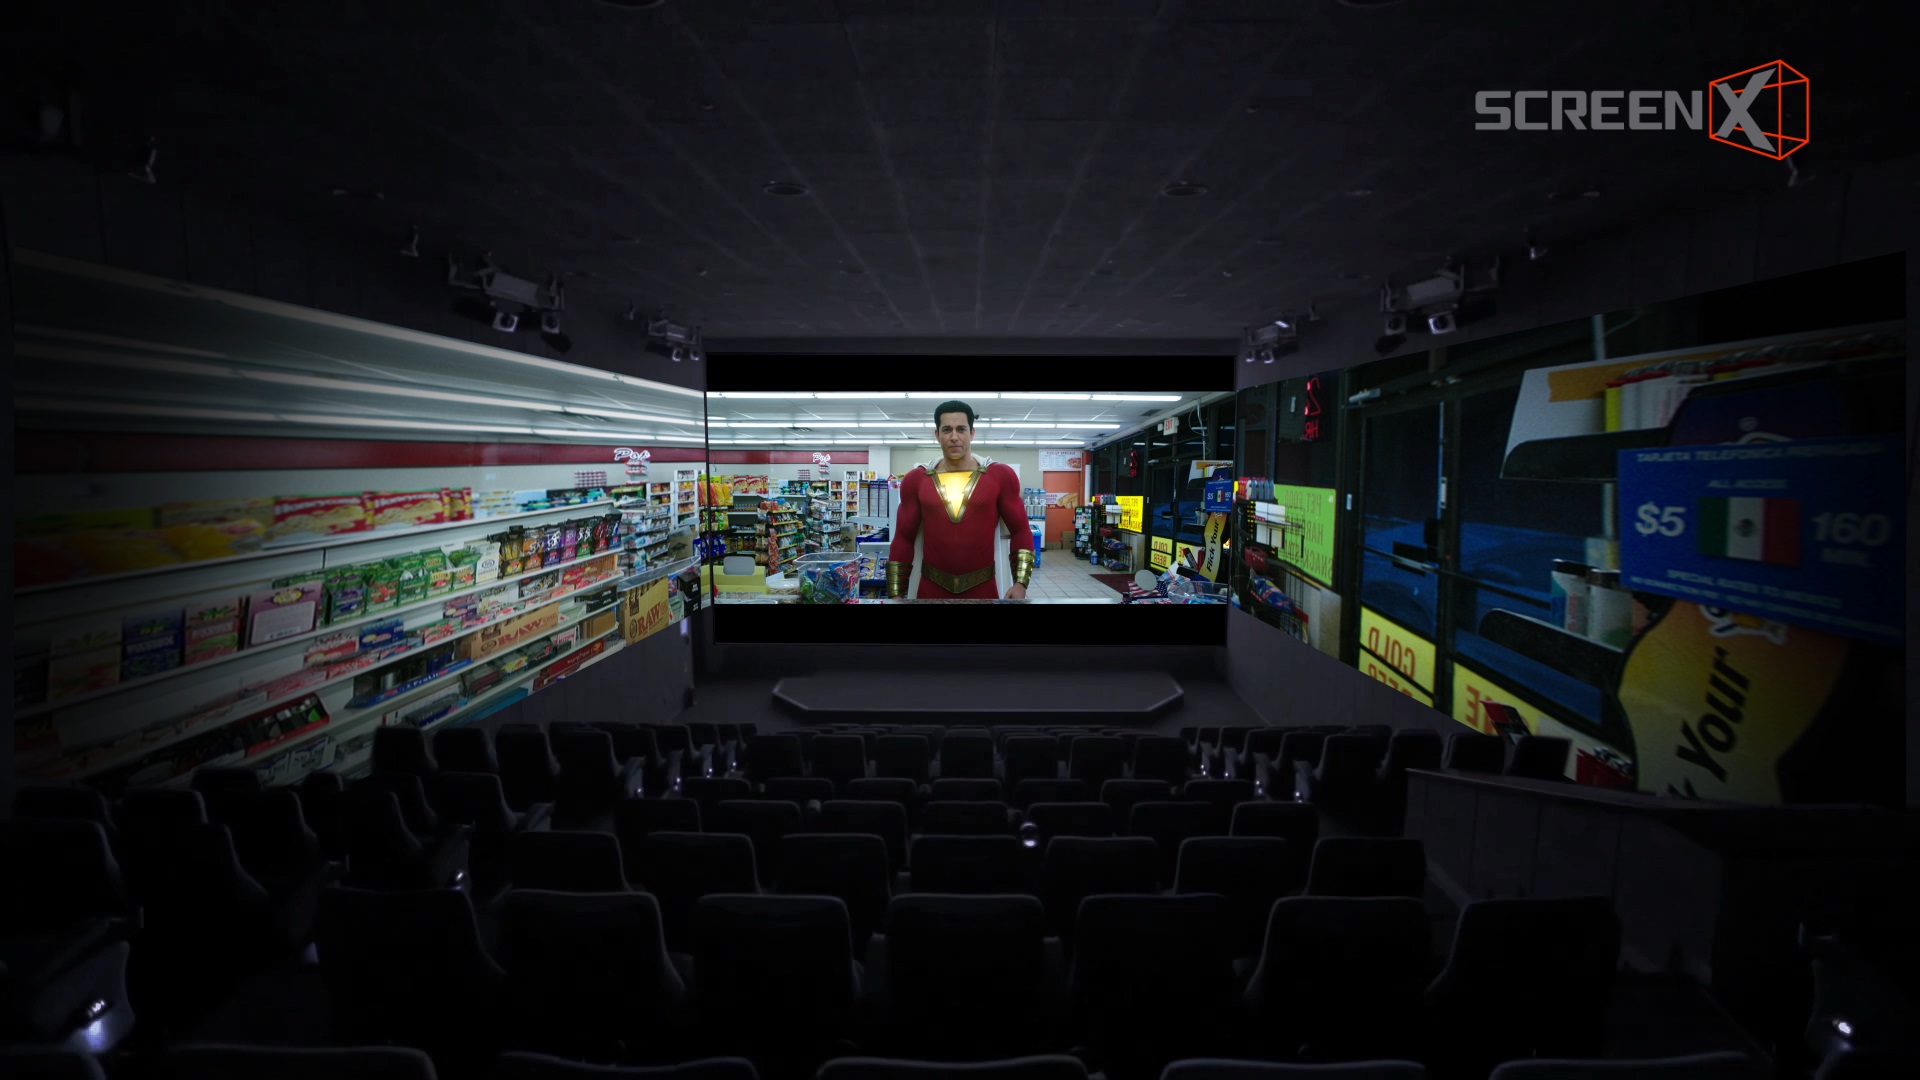 أضخم الأفلام المرتقبة لعام 2019 على شاشة ScreenX في ريل سينما دبي